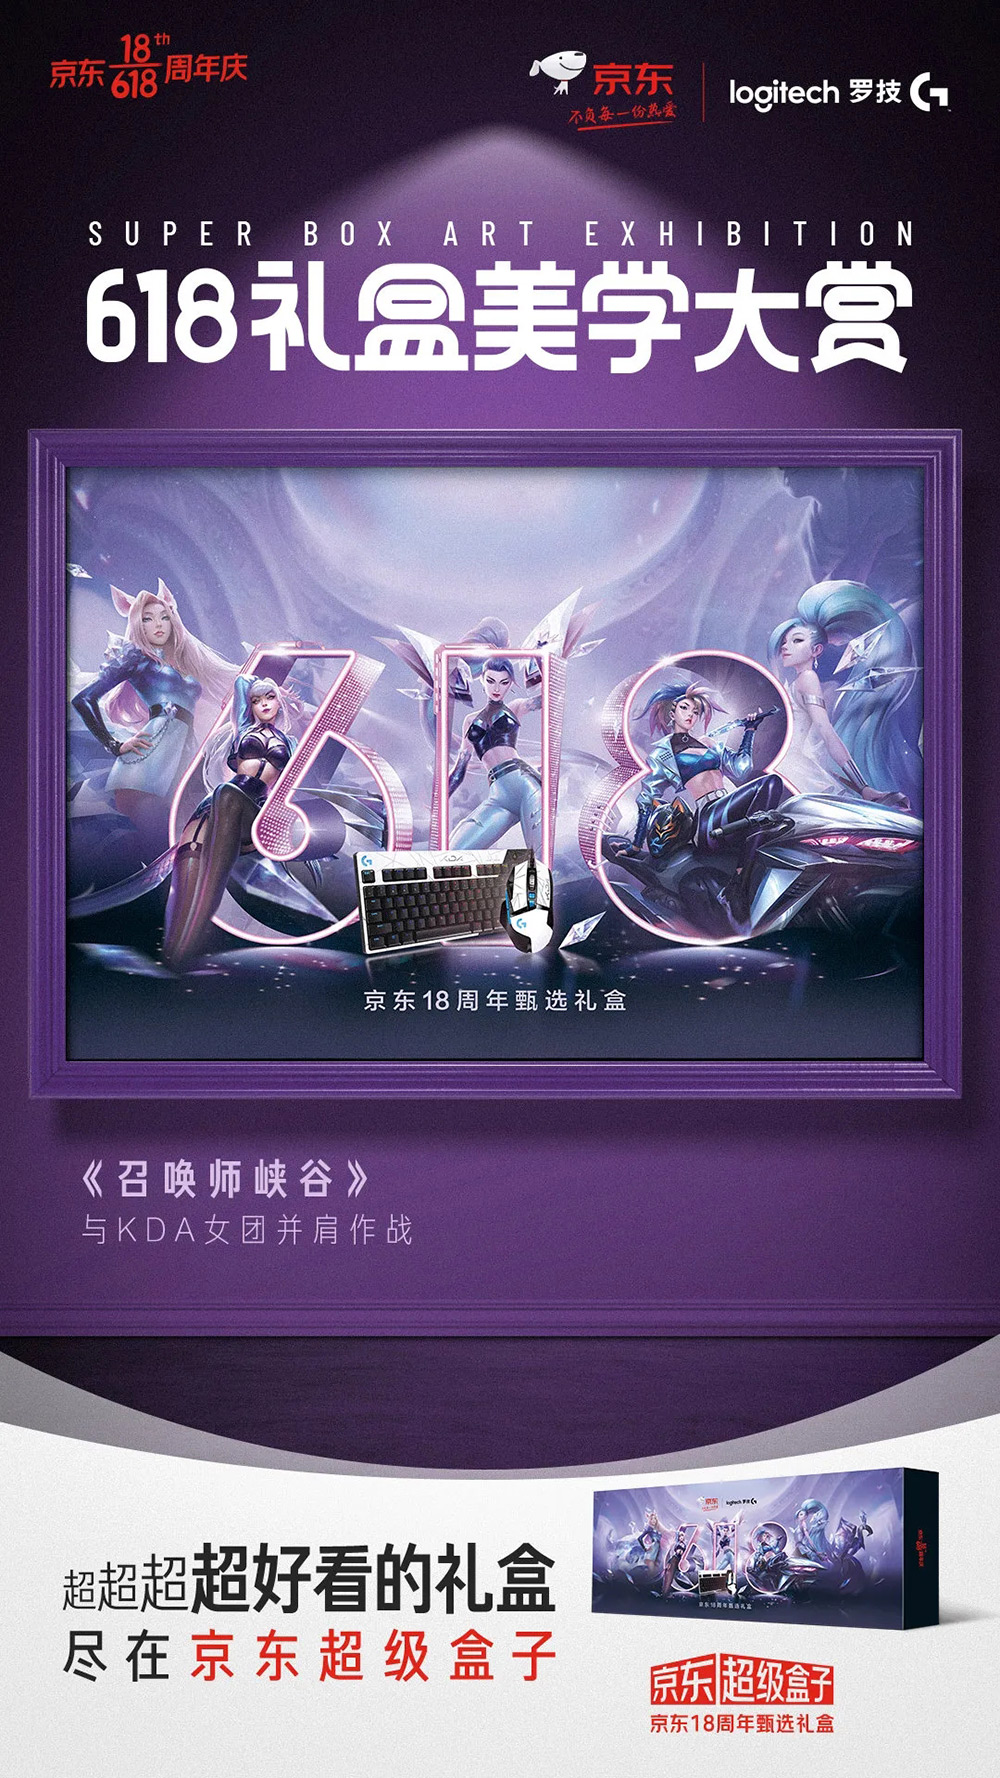 京东联合各大品牌推出的「618礼盒美学大赏」系列海报!